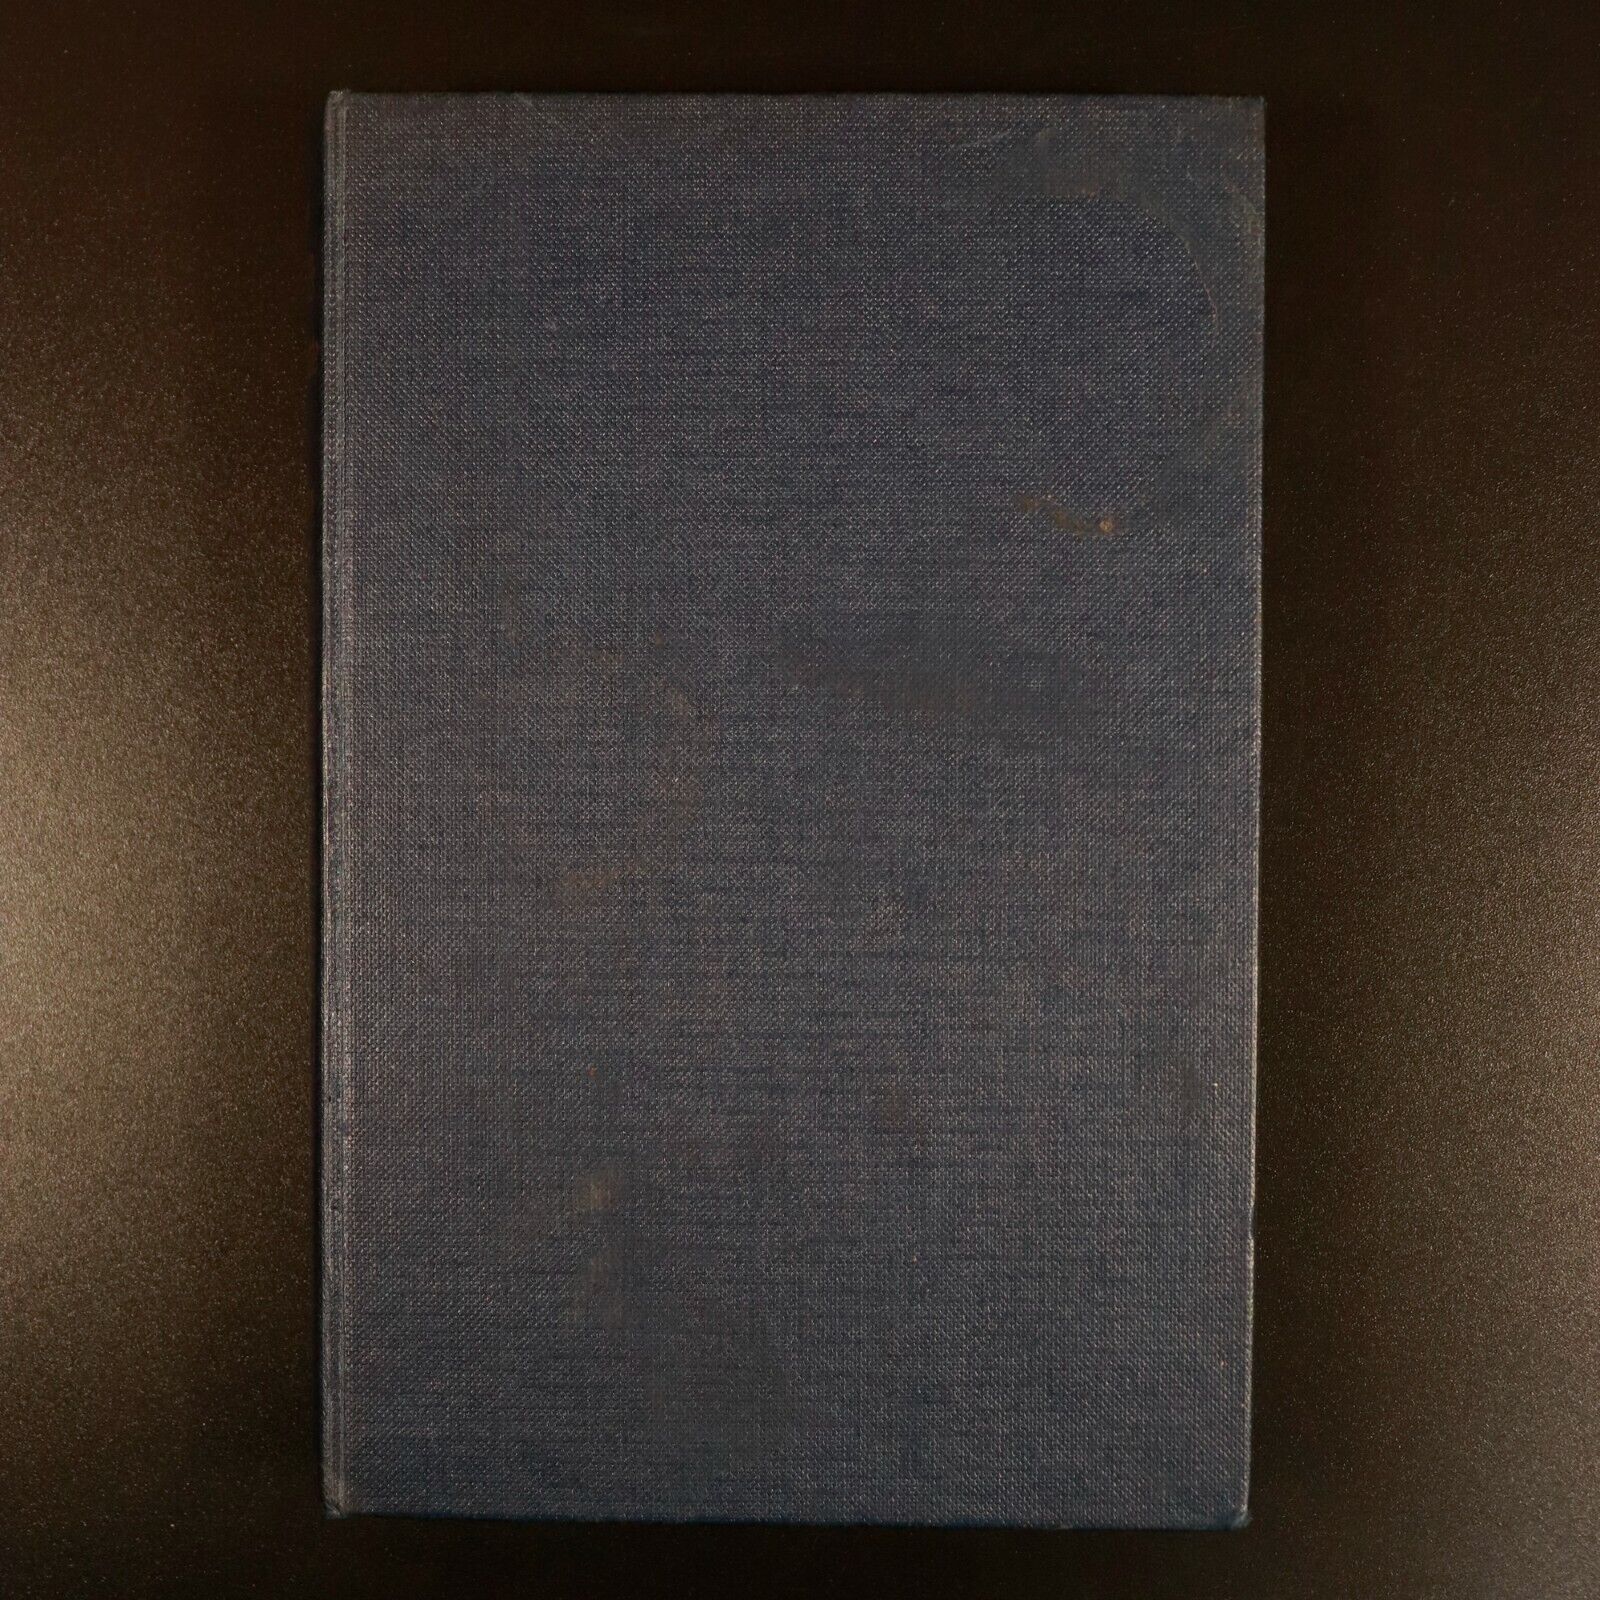 1959 The Devil's Advocate by Morris West 1st Edition Australian Fiction Book